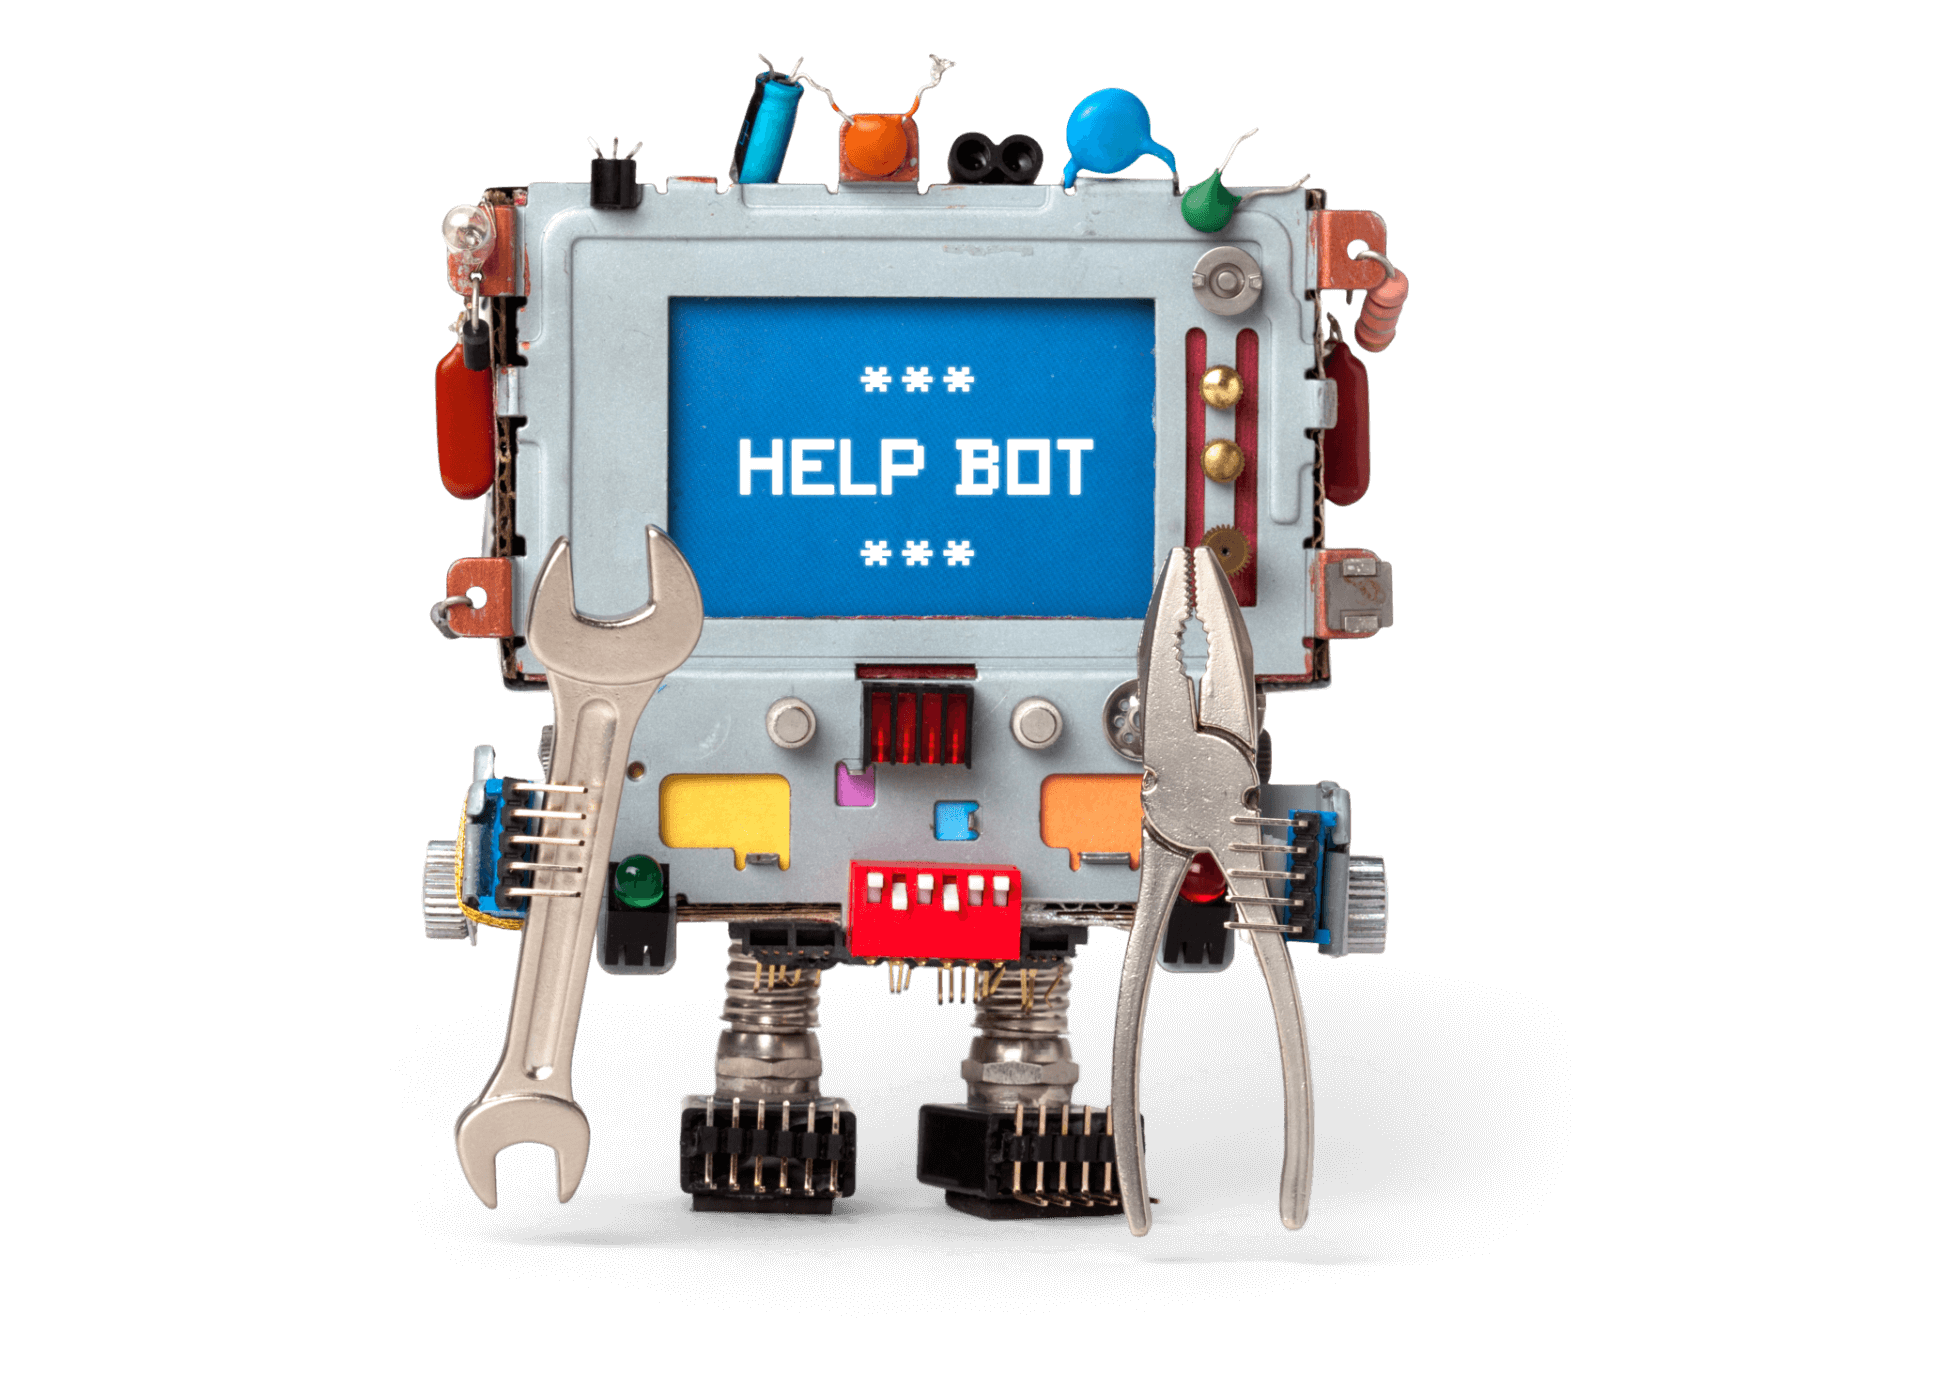 Roboter mit Display, welches Help Bot anzeigt